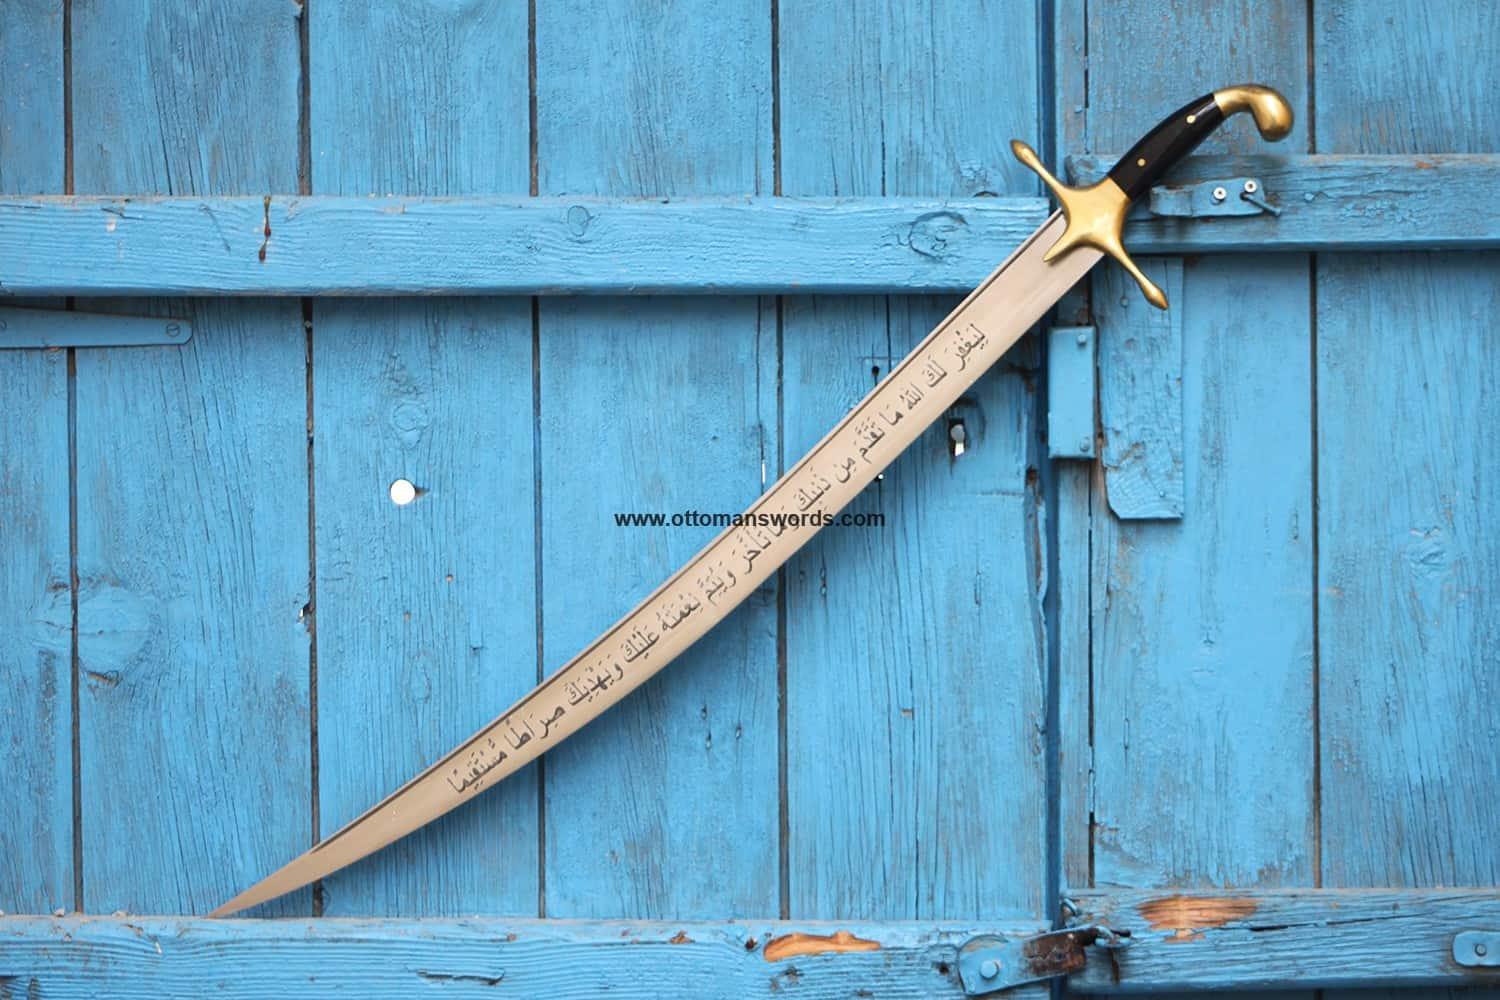 turkish sword for sale online (8)